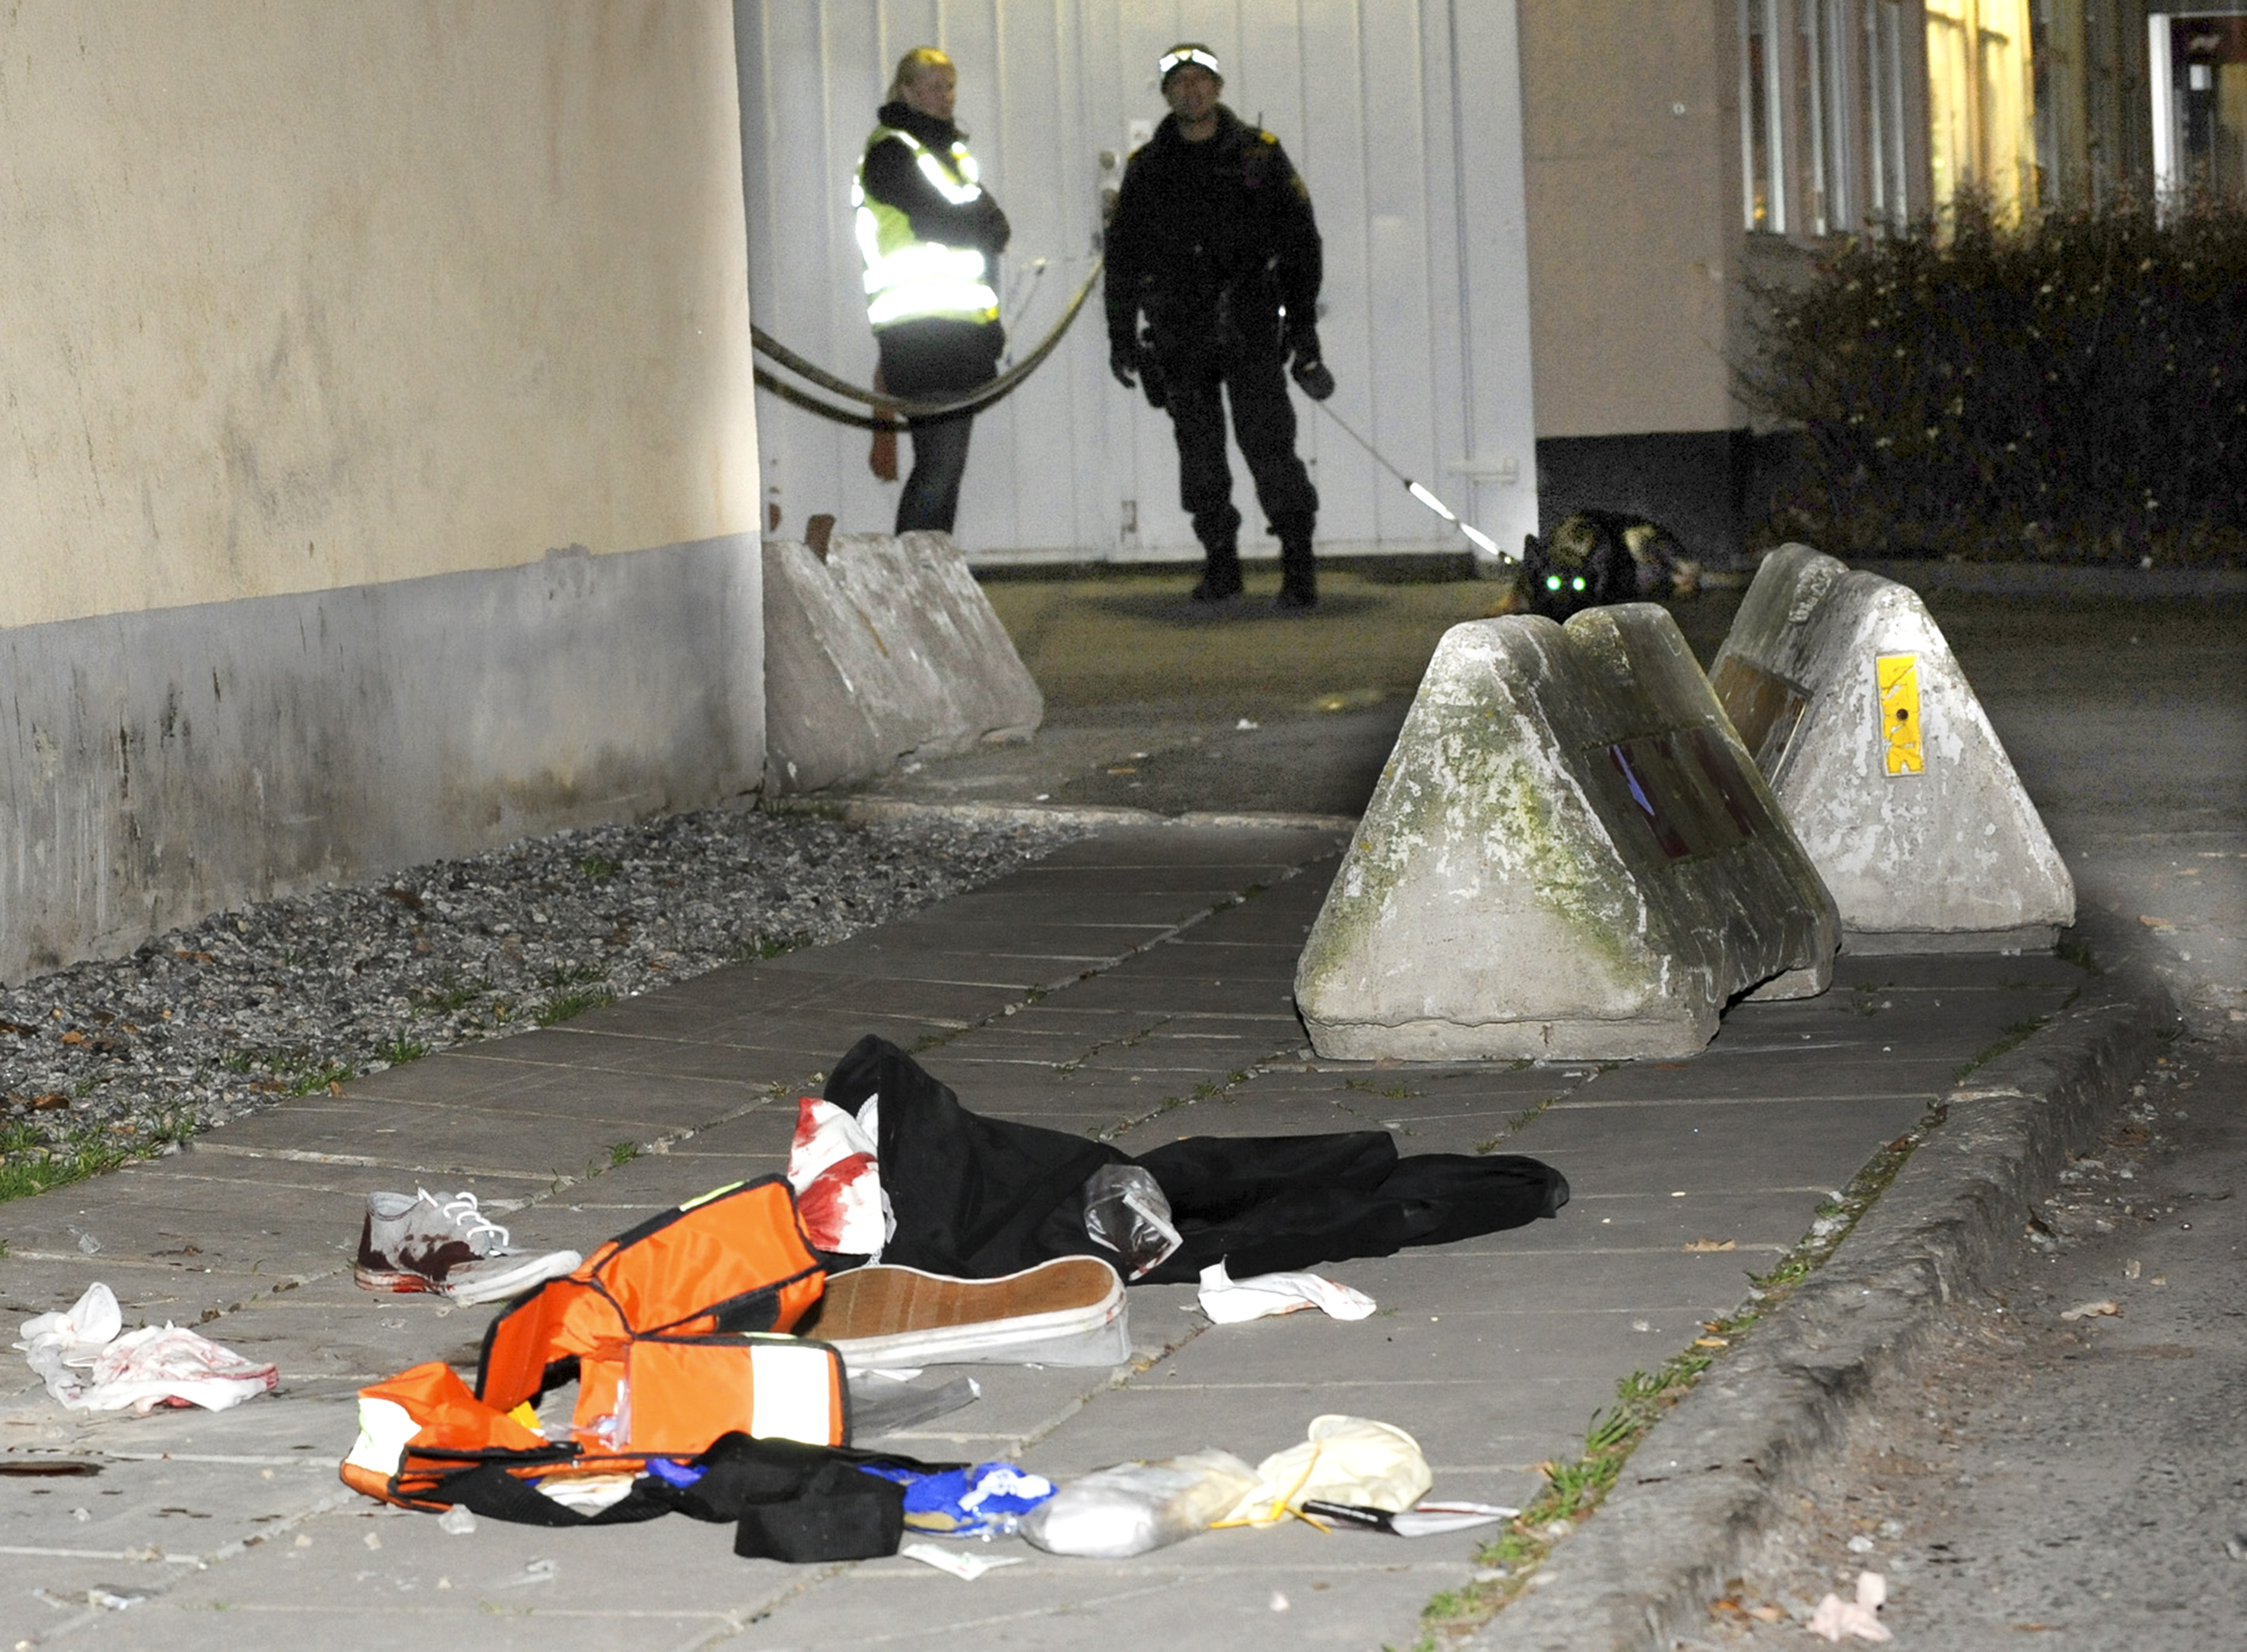 Polis och avspärrningar på platsen. Efter att två gånger ha avlossat varningsskott sköt en polis en hotfull man i Örebro på tisdagskvällen. 